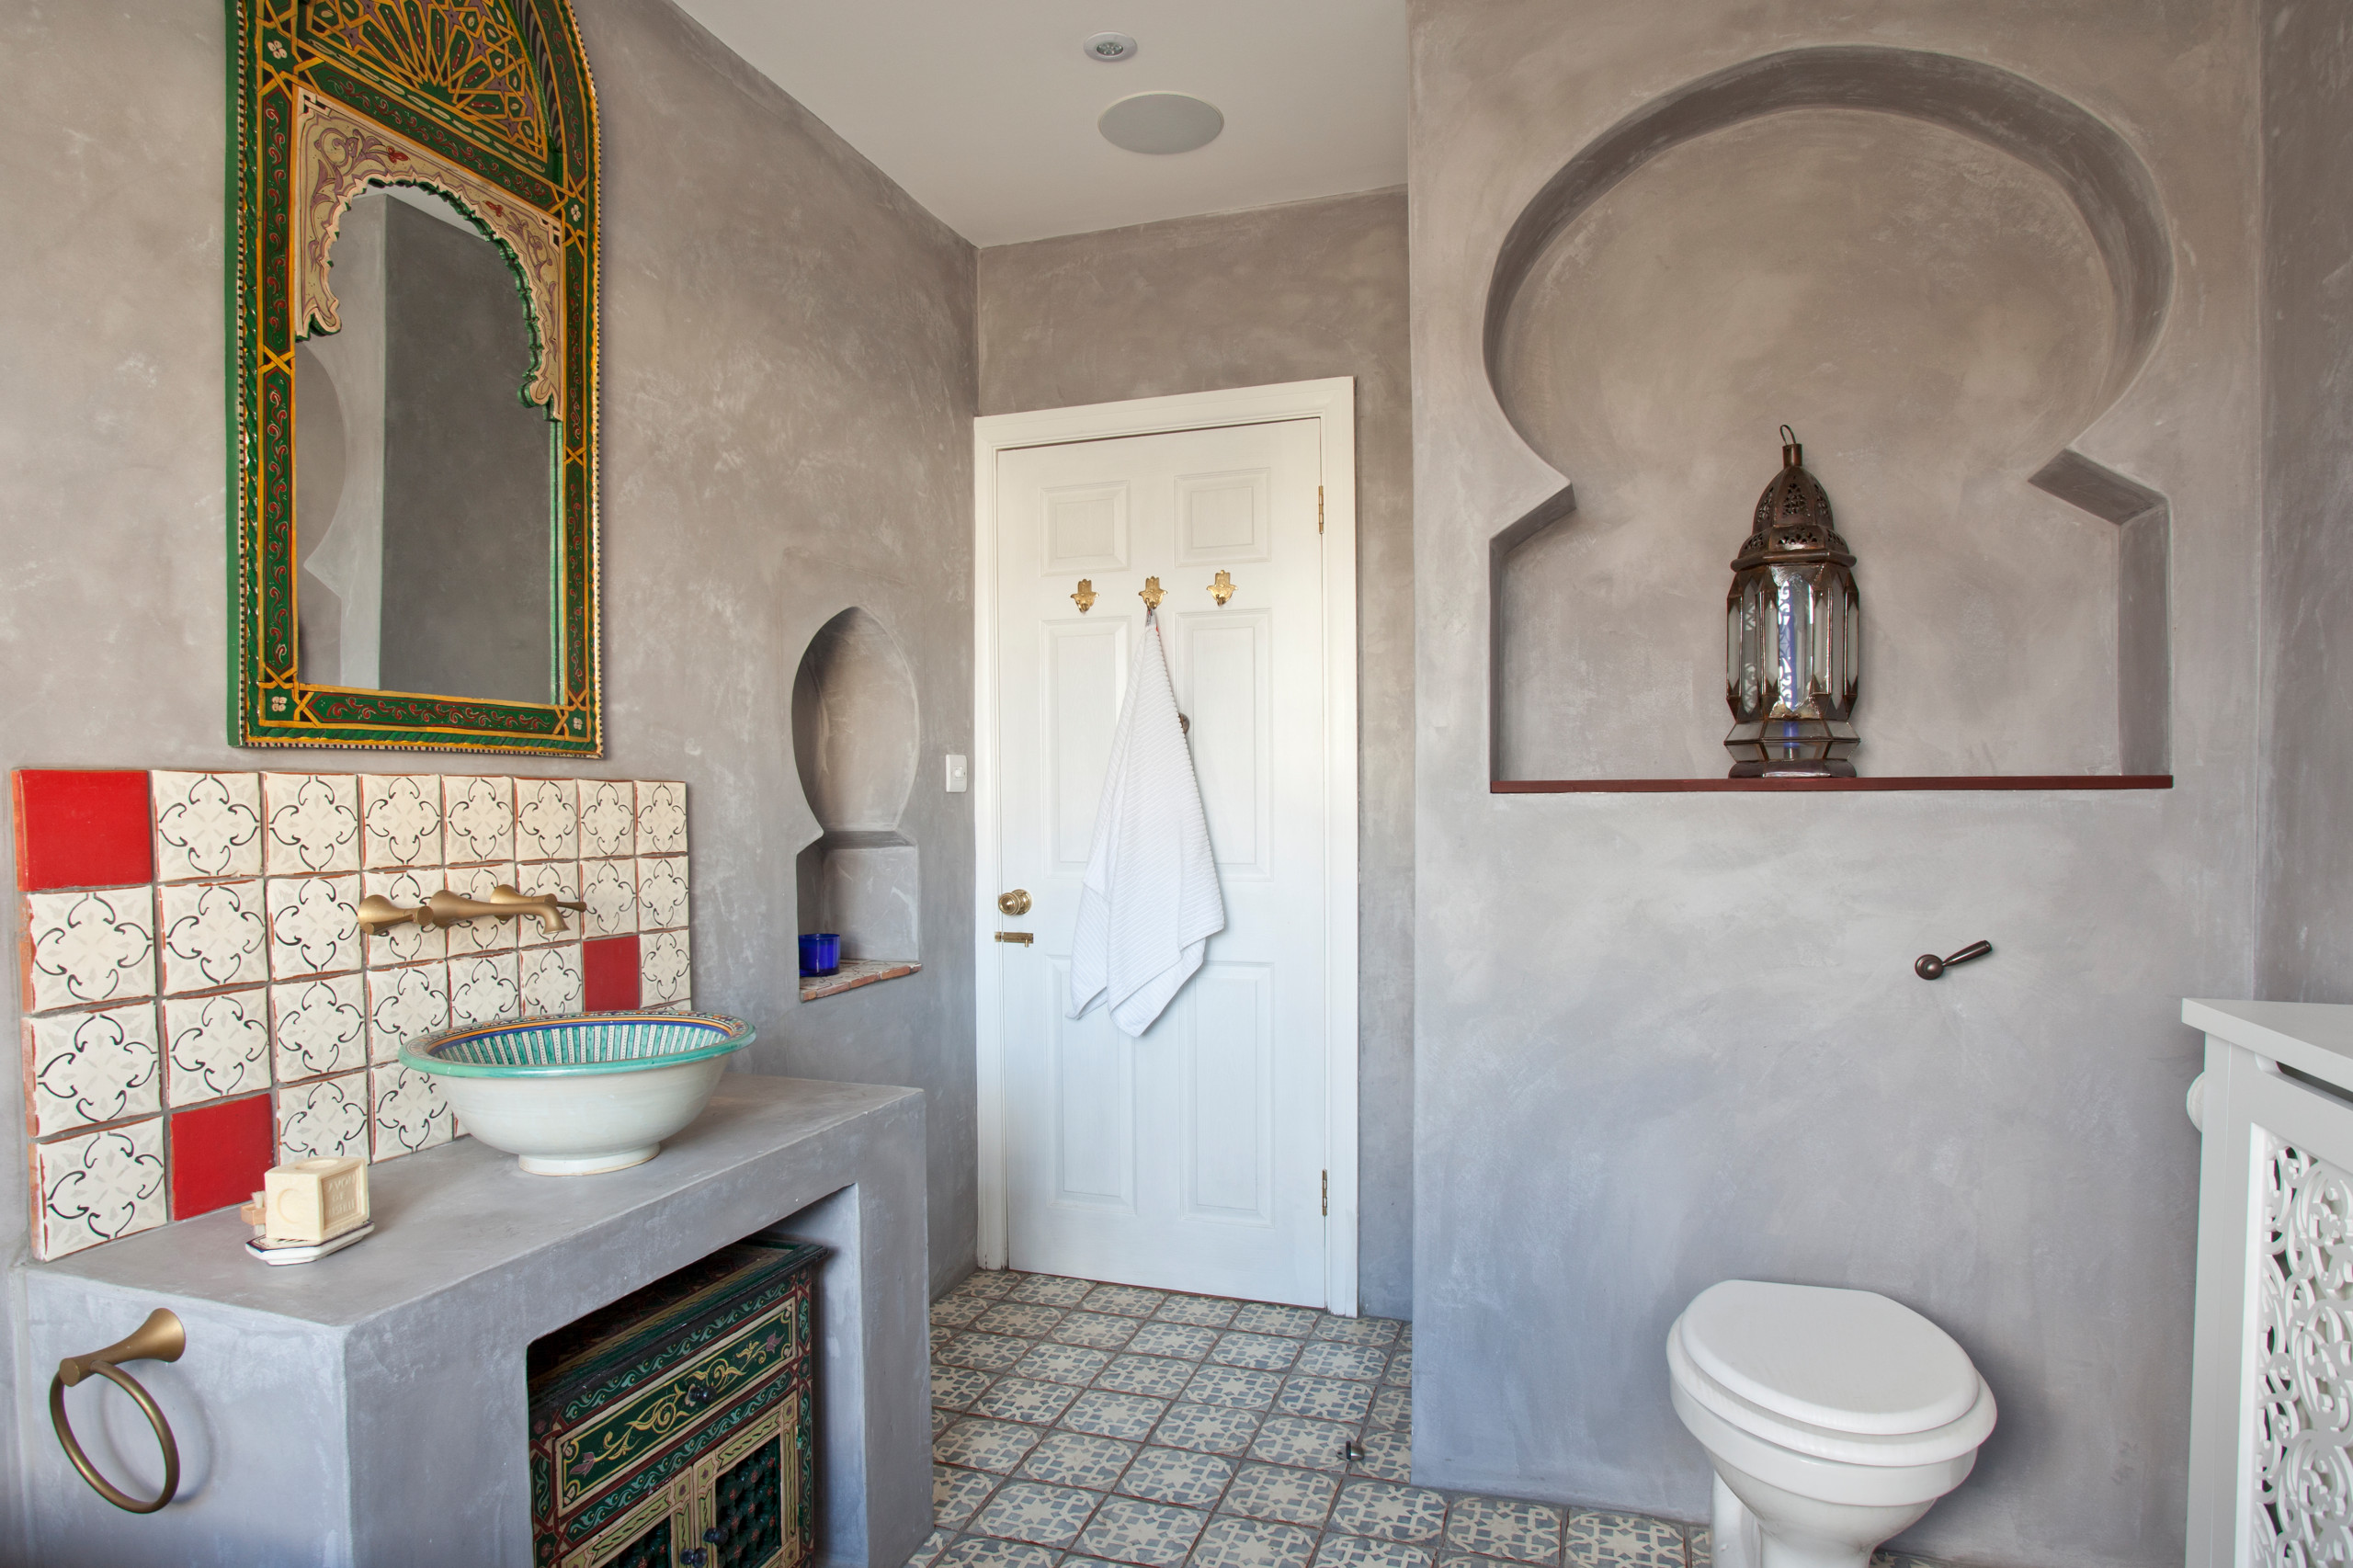 orientalisches badezimmer: 10 typische elemente fürs hamam-feeling